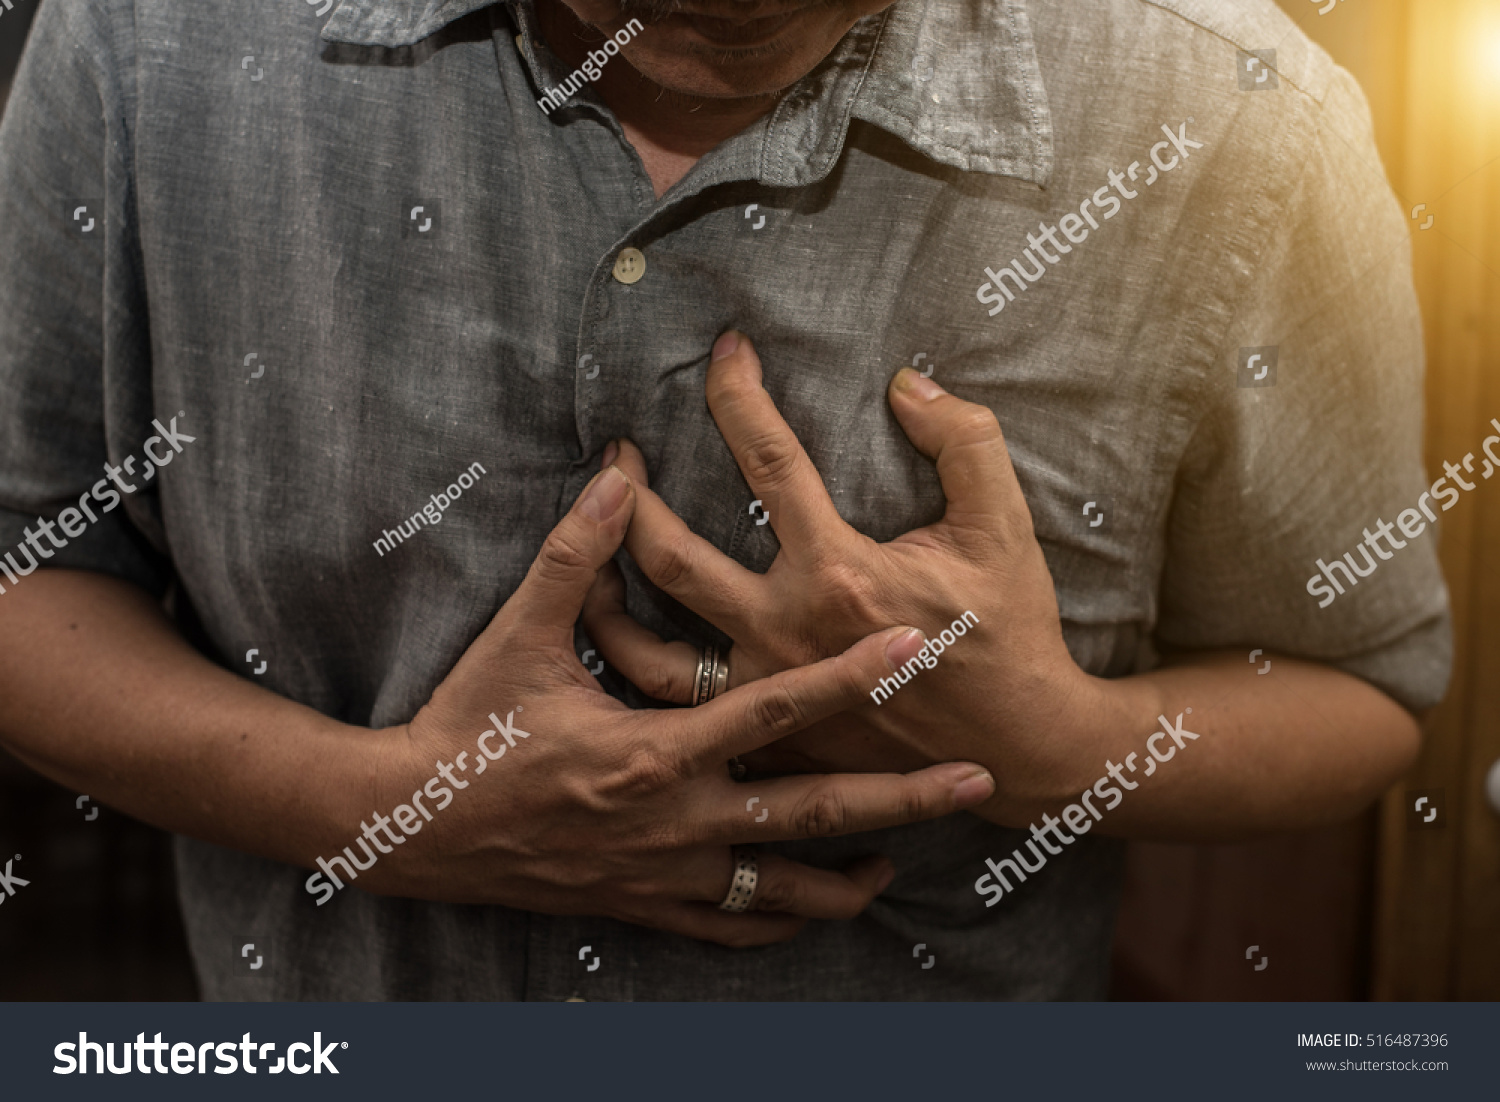 Man having a heart attack.